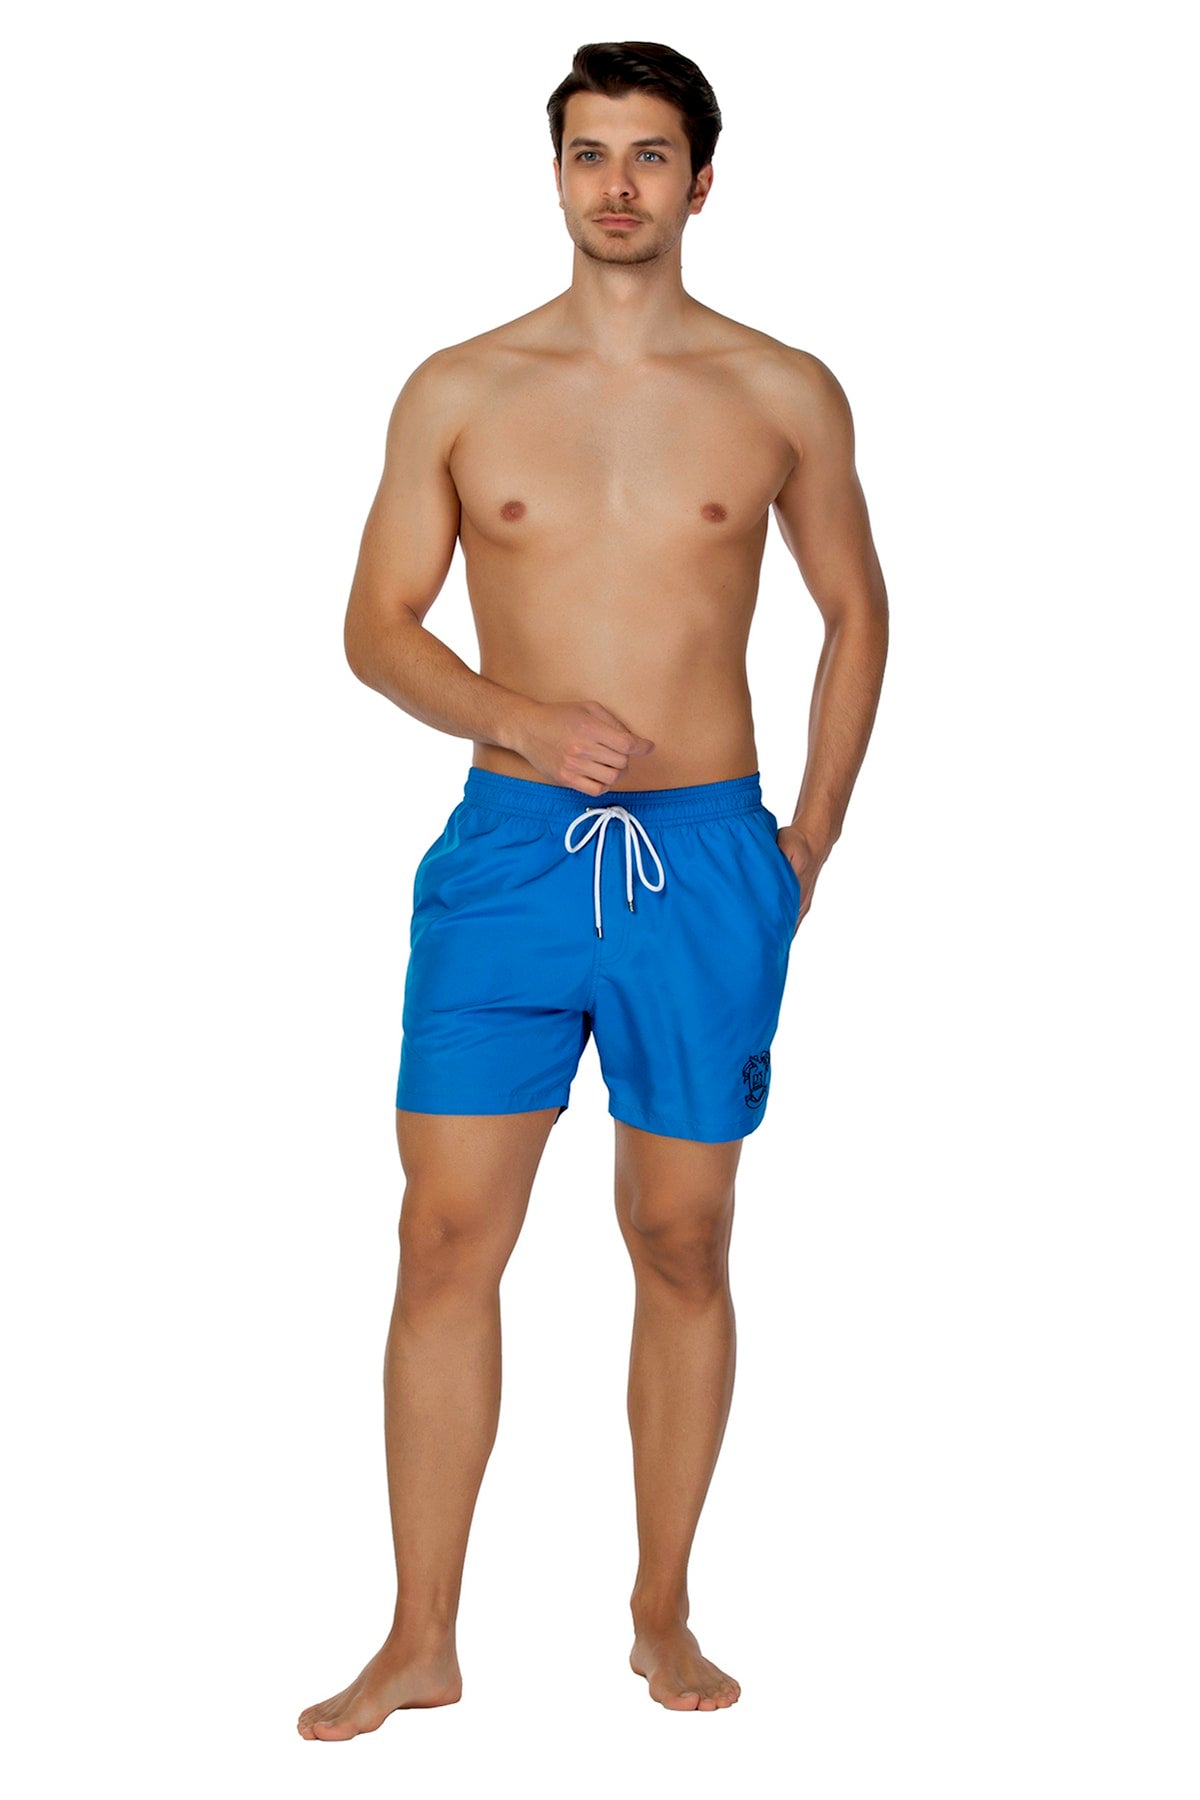 Ds Shorts Swimwear Basic Saxe